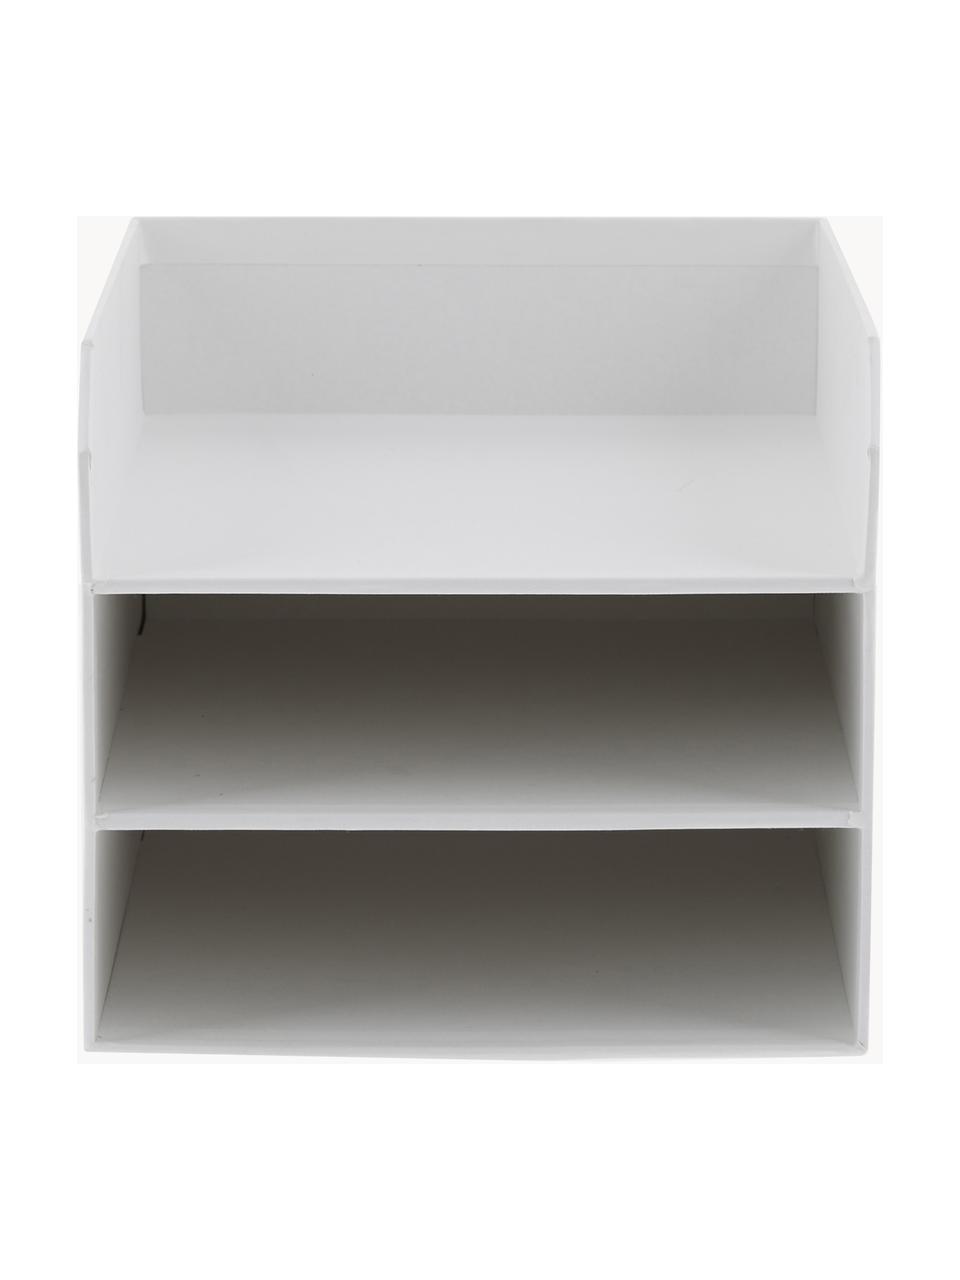 Dokumentenablage Trey, Fester, laminierter Karton, Weiß, B 23 x T 32 cm